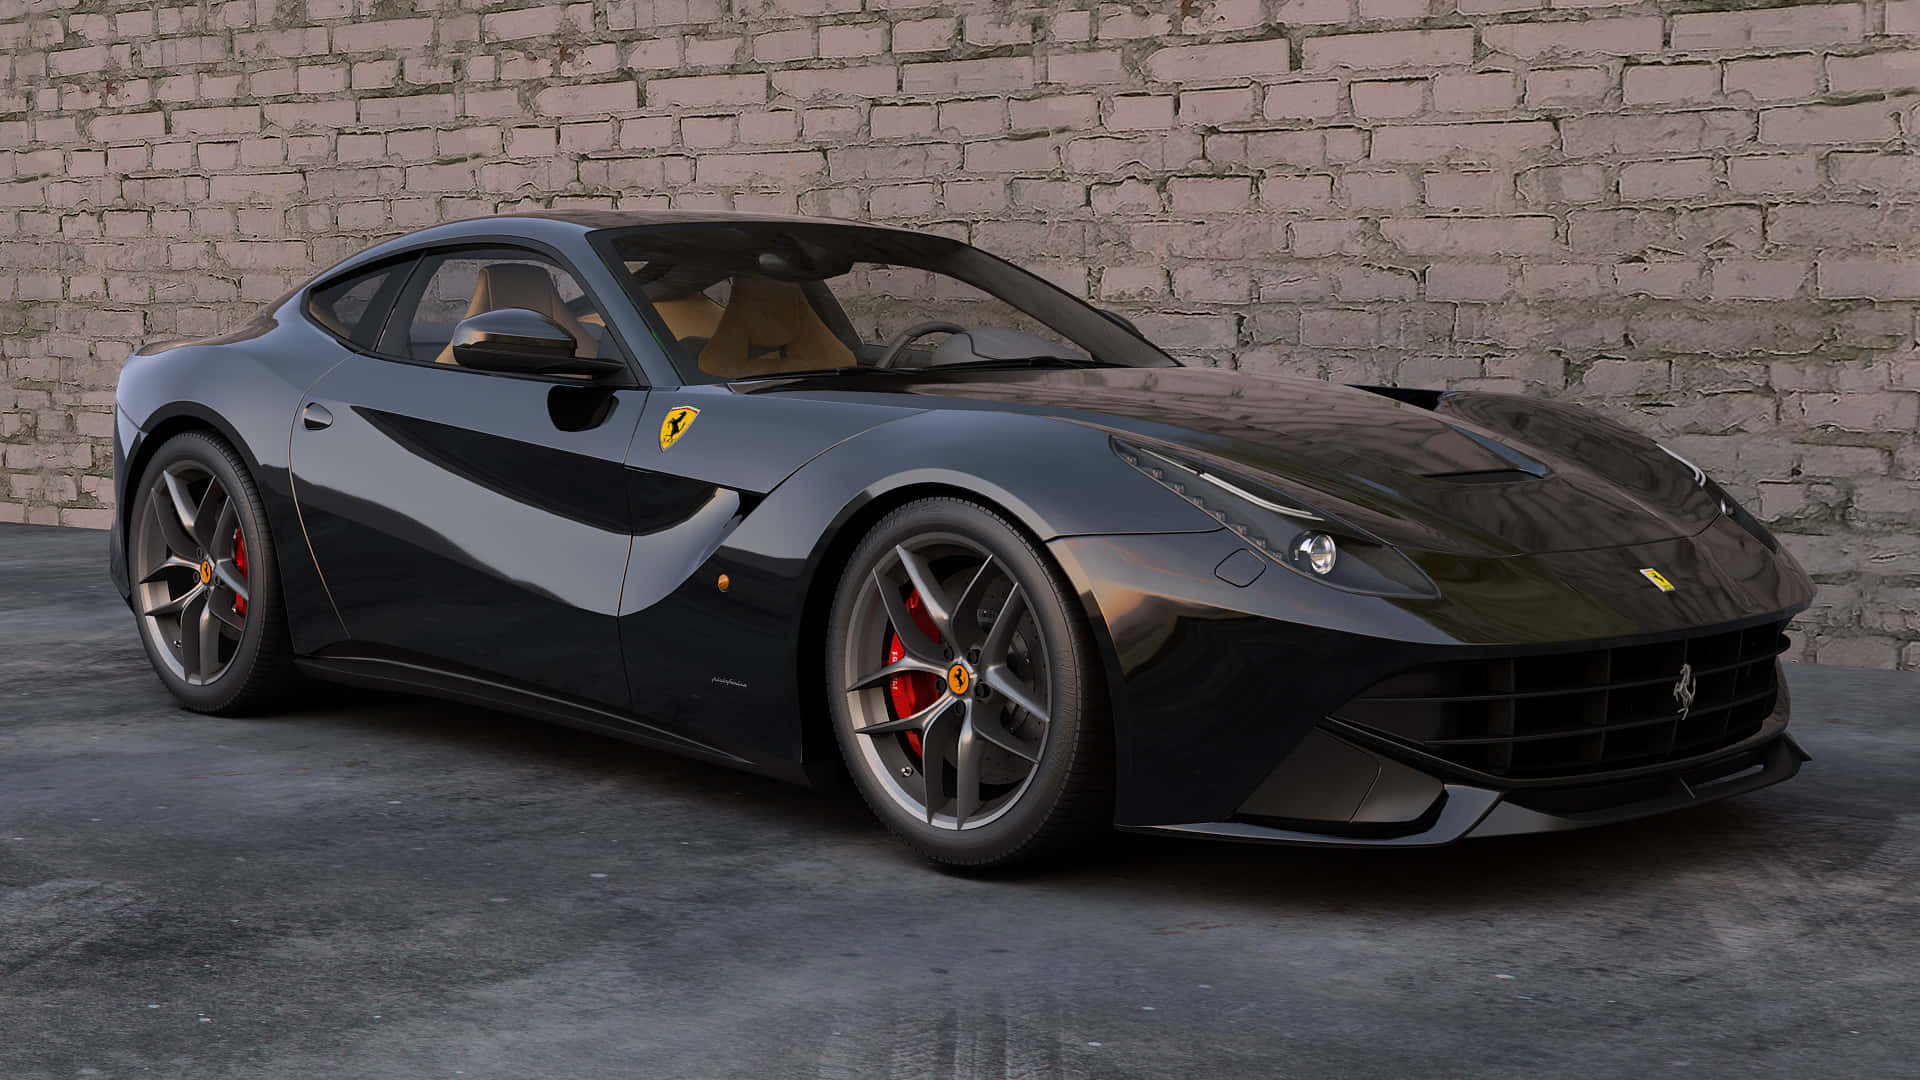 Sleek Ferrari F12 Berlinetta in Motion Wallpaper